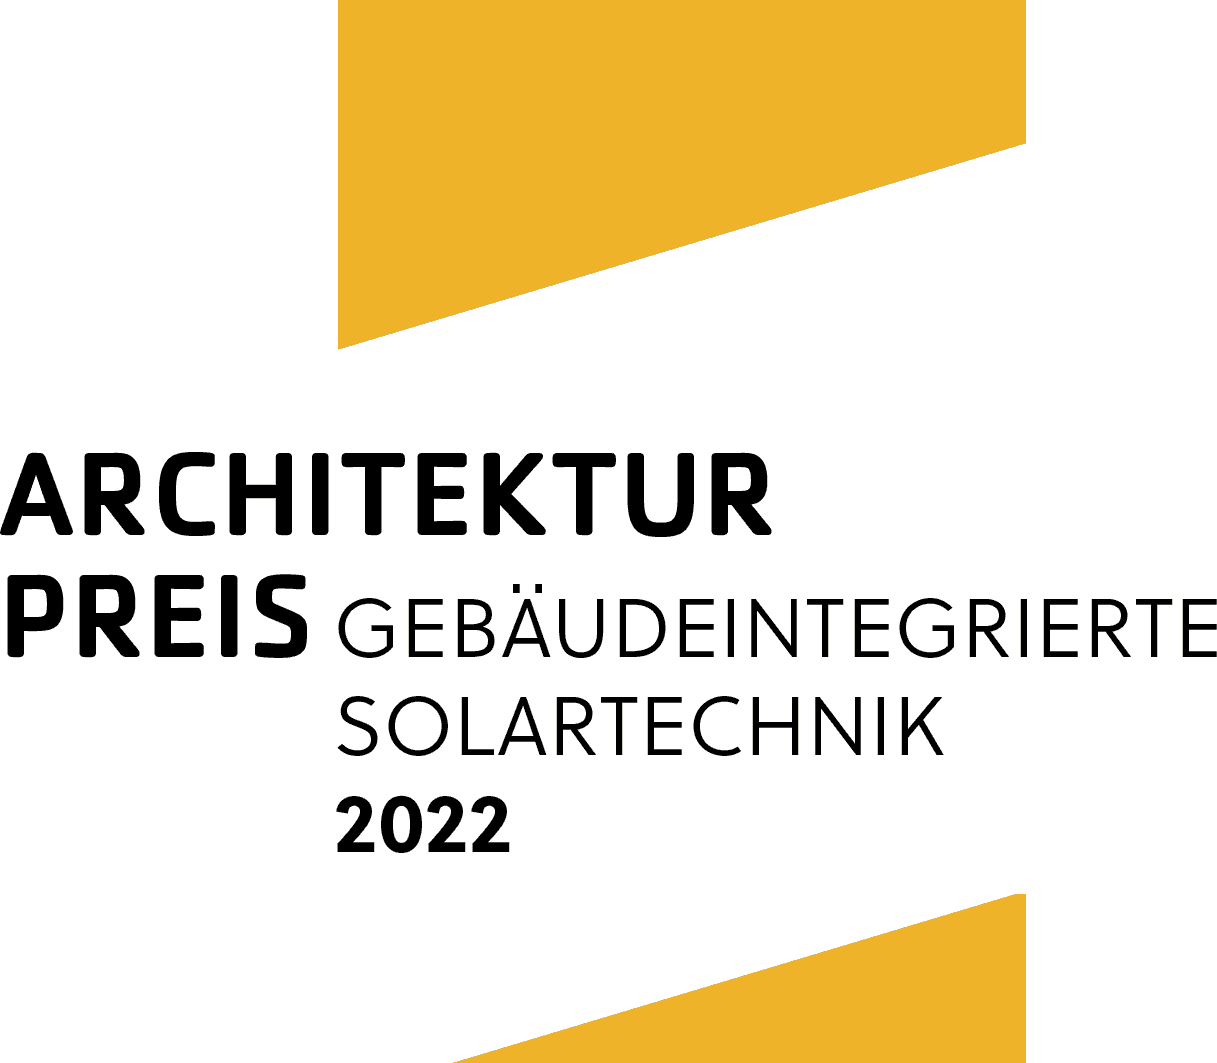 Architekturpreis Gebäudeintegrierte Solartechnik 2022 ausgelobt